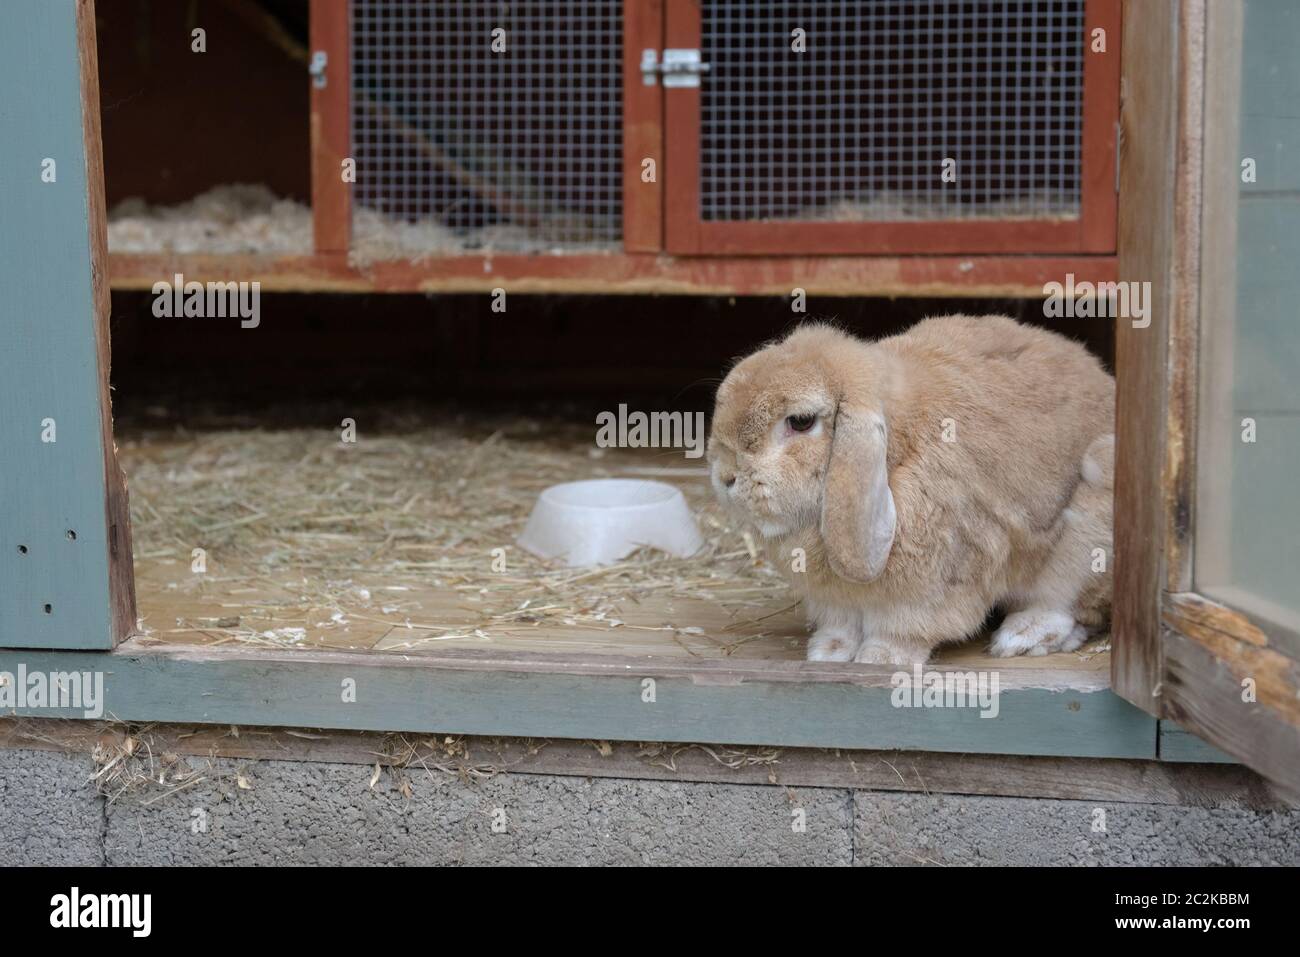 Più vicino in, piccolo marrone chiaro, beige o nana sabbioso olanda lop orecchio coniglio animale domestico guarda fuori da hutch all'interno di un capannone. Tepal e colori arancio hutch. Foto Stock